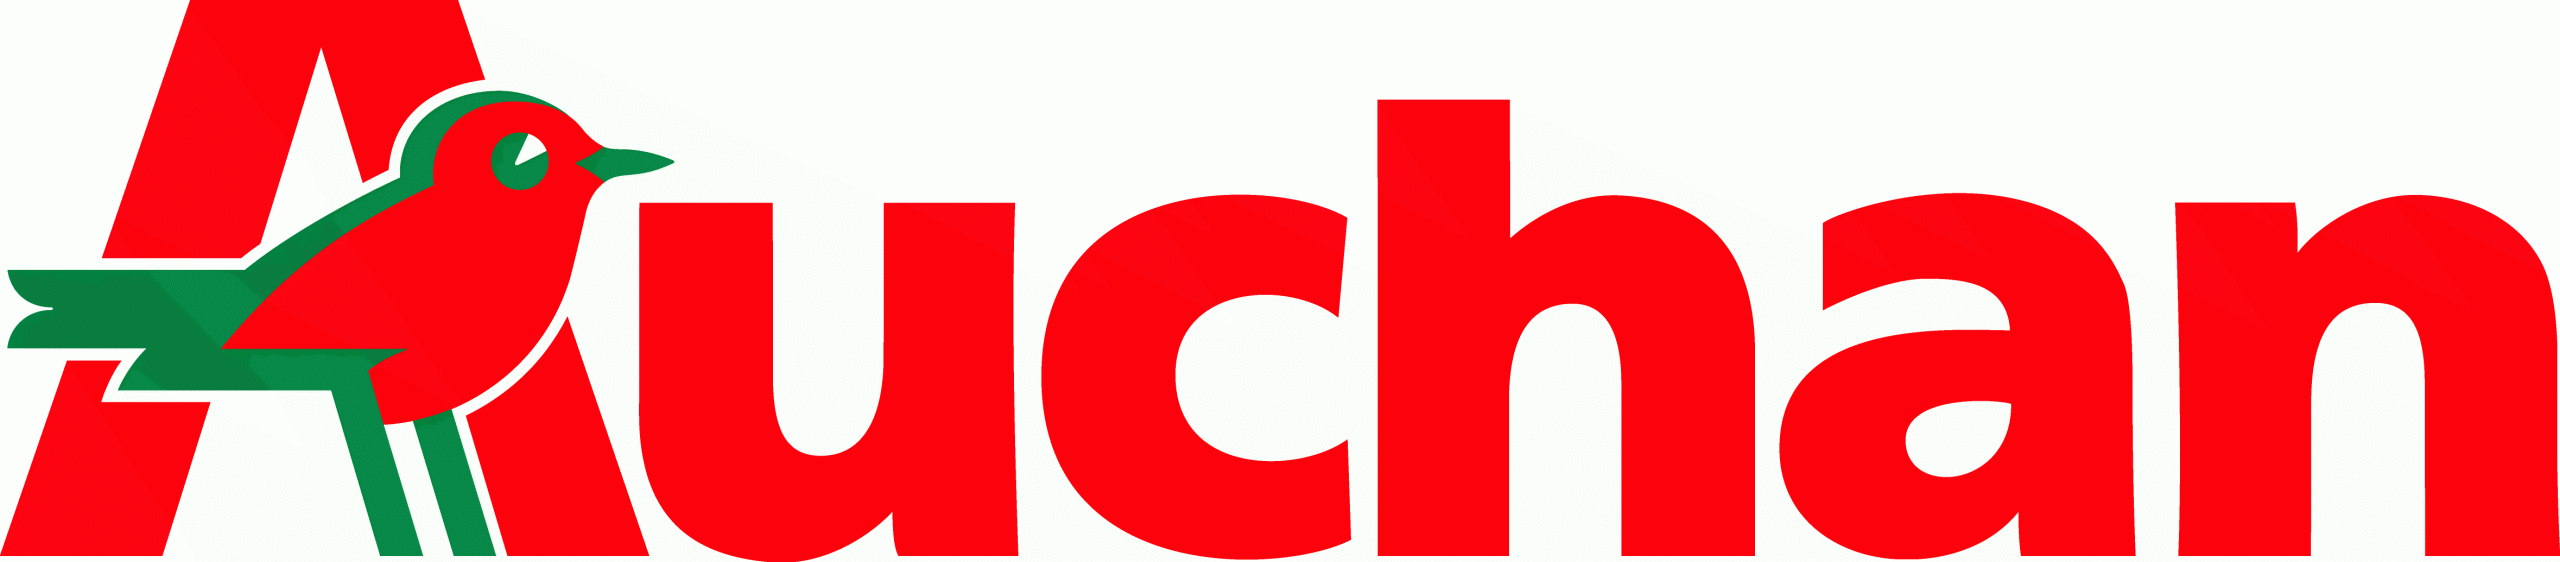 Grupa Auchan – Wyniki za rok 2013